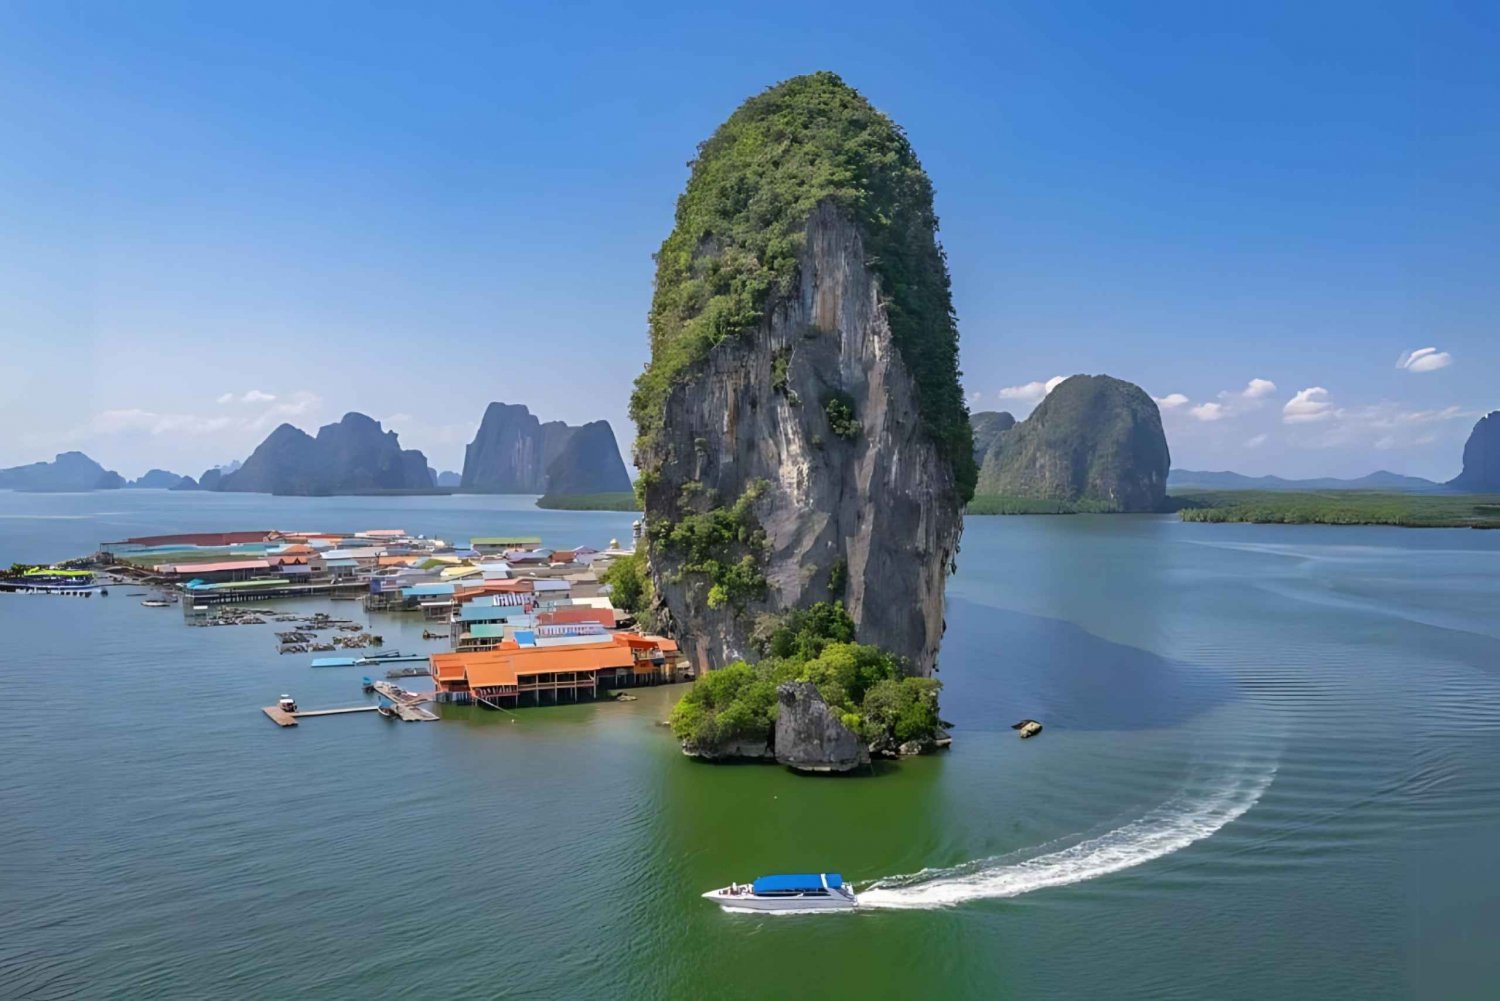 Phuket : James Bondin saari merikanootilla pikaveneellä